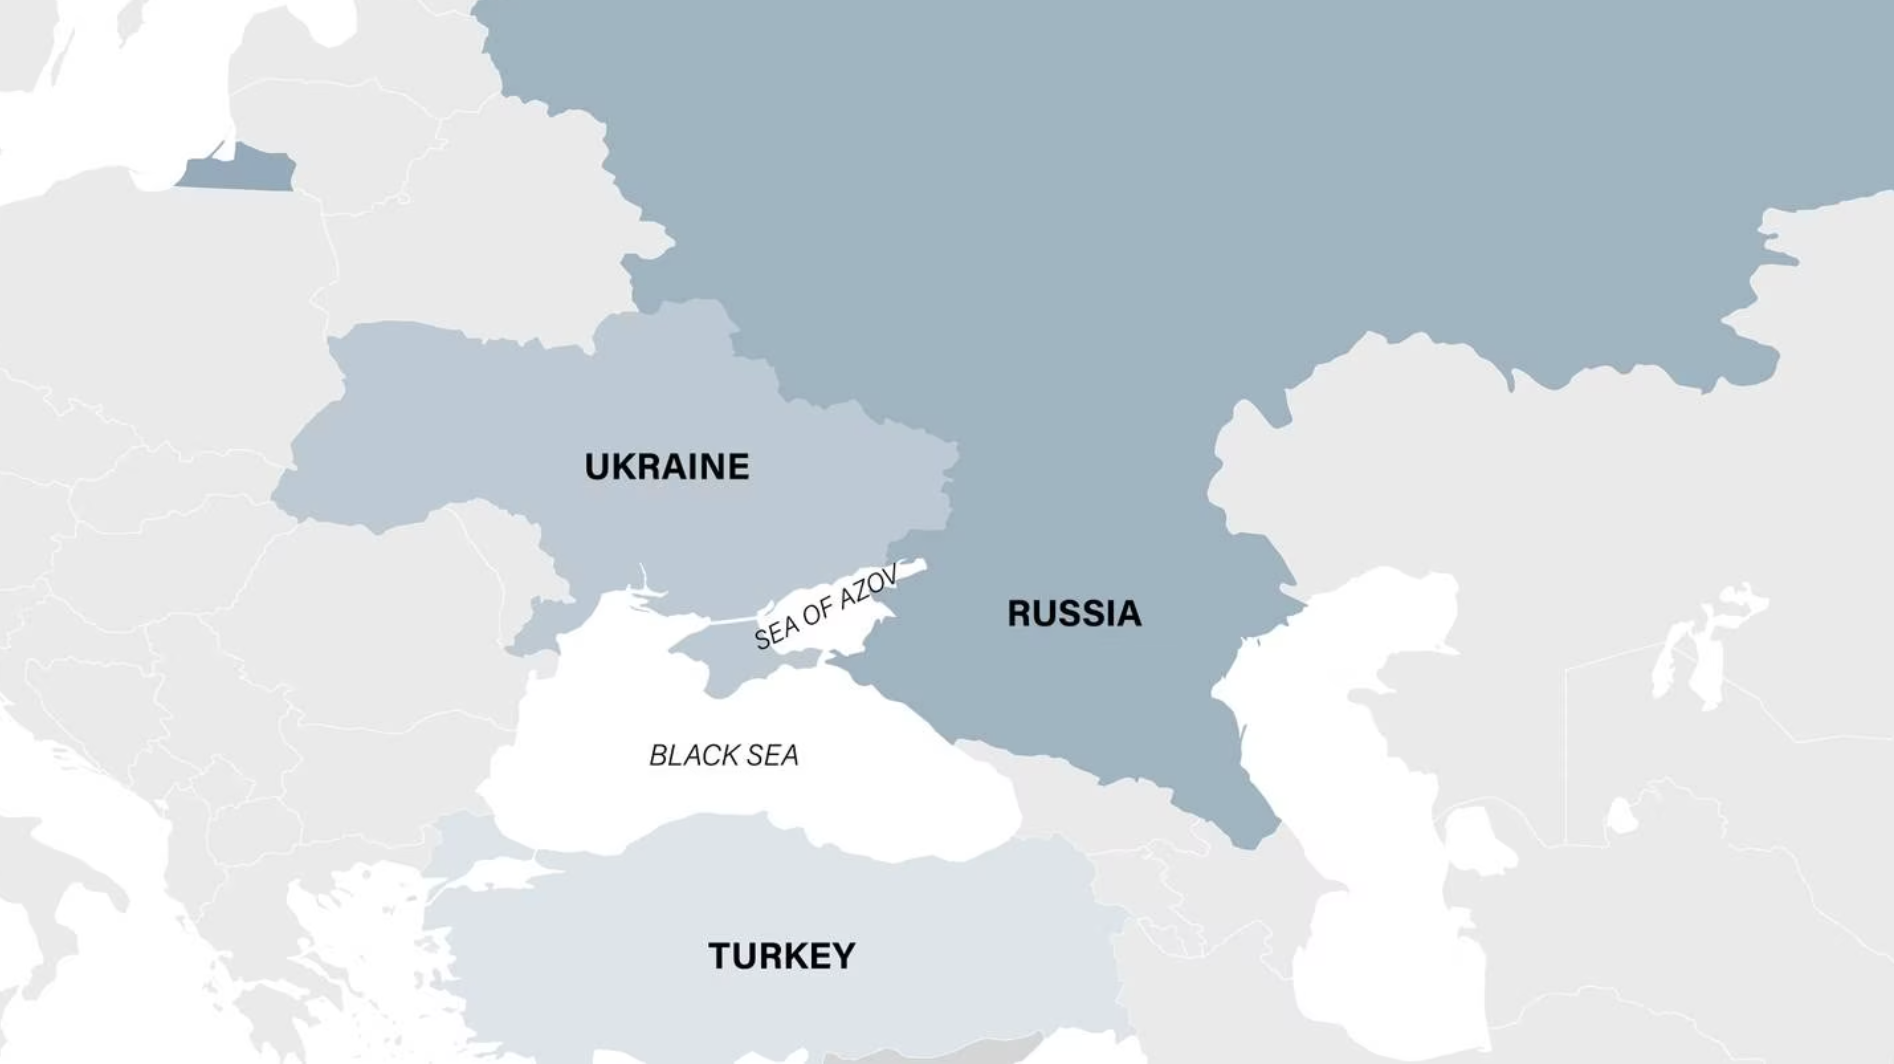 Biển Đen (Black Sea) trở thành điểm nóng quân sự và địa chính trị. Khu vực này vô cùng quan trọng đối với cả Nga, Ukraina và phương Tây. Ảnh: Defence News